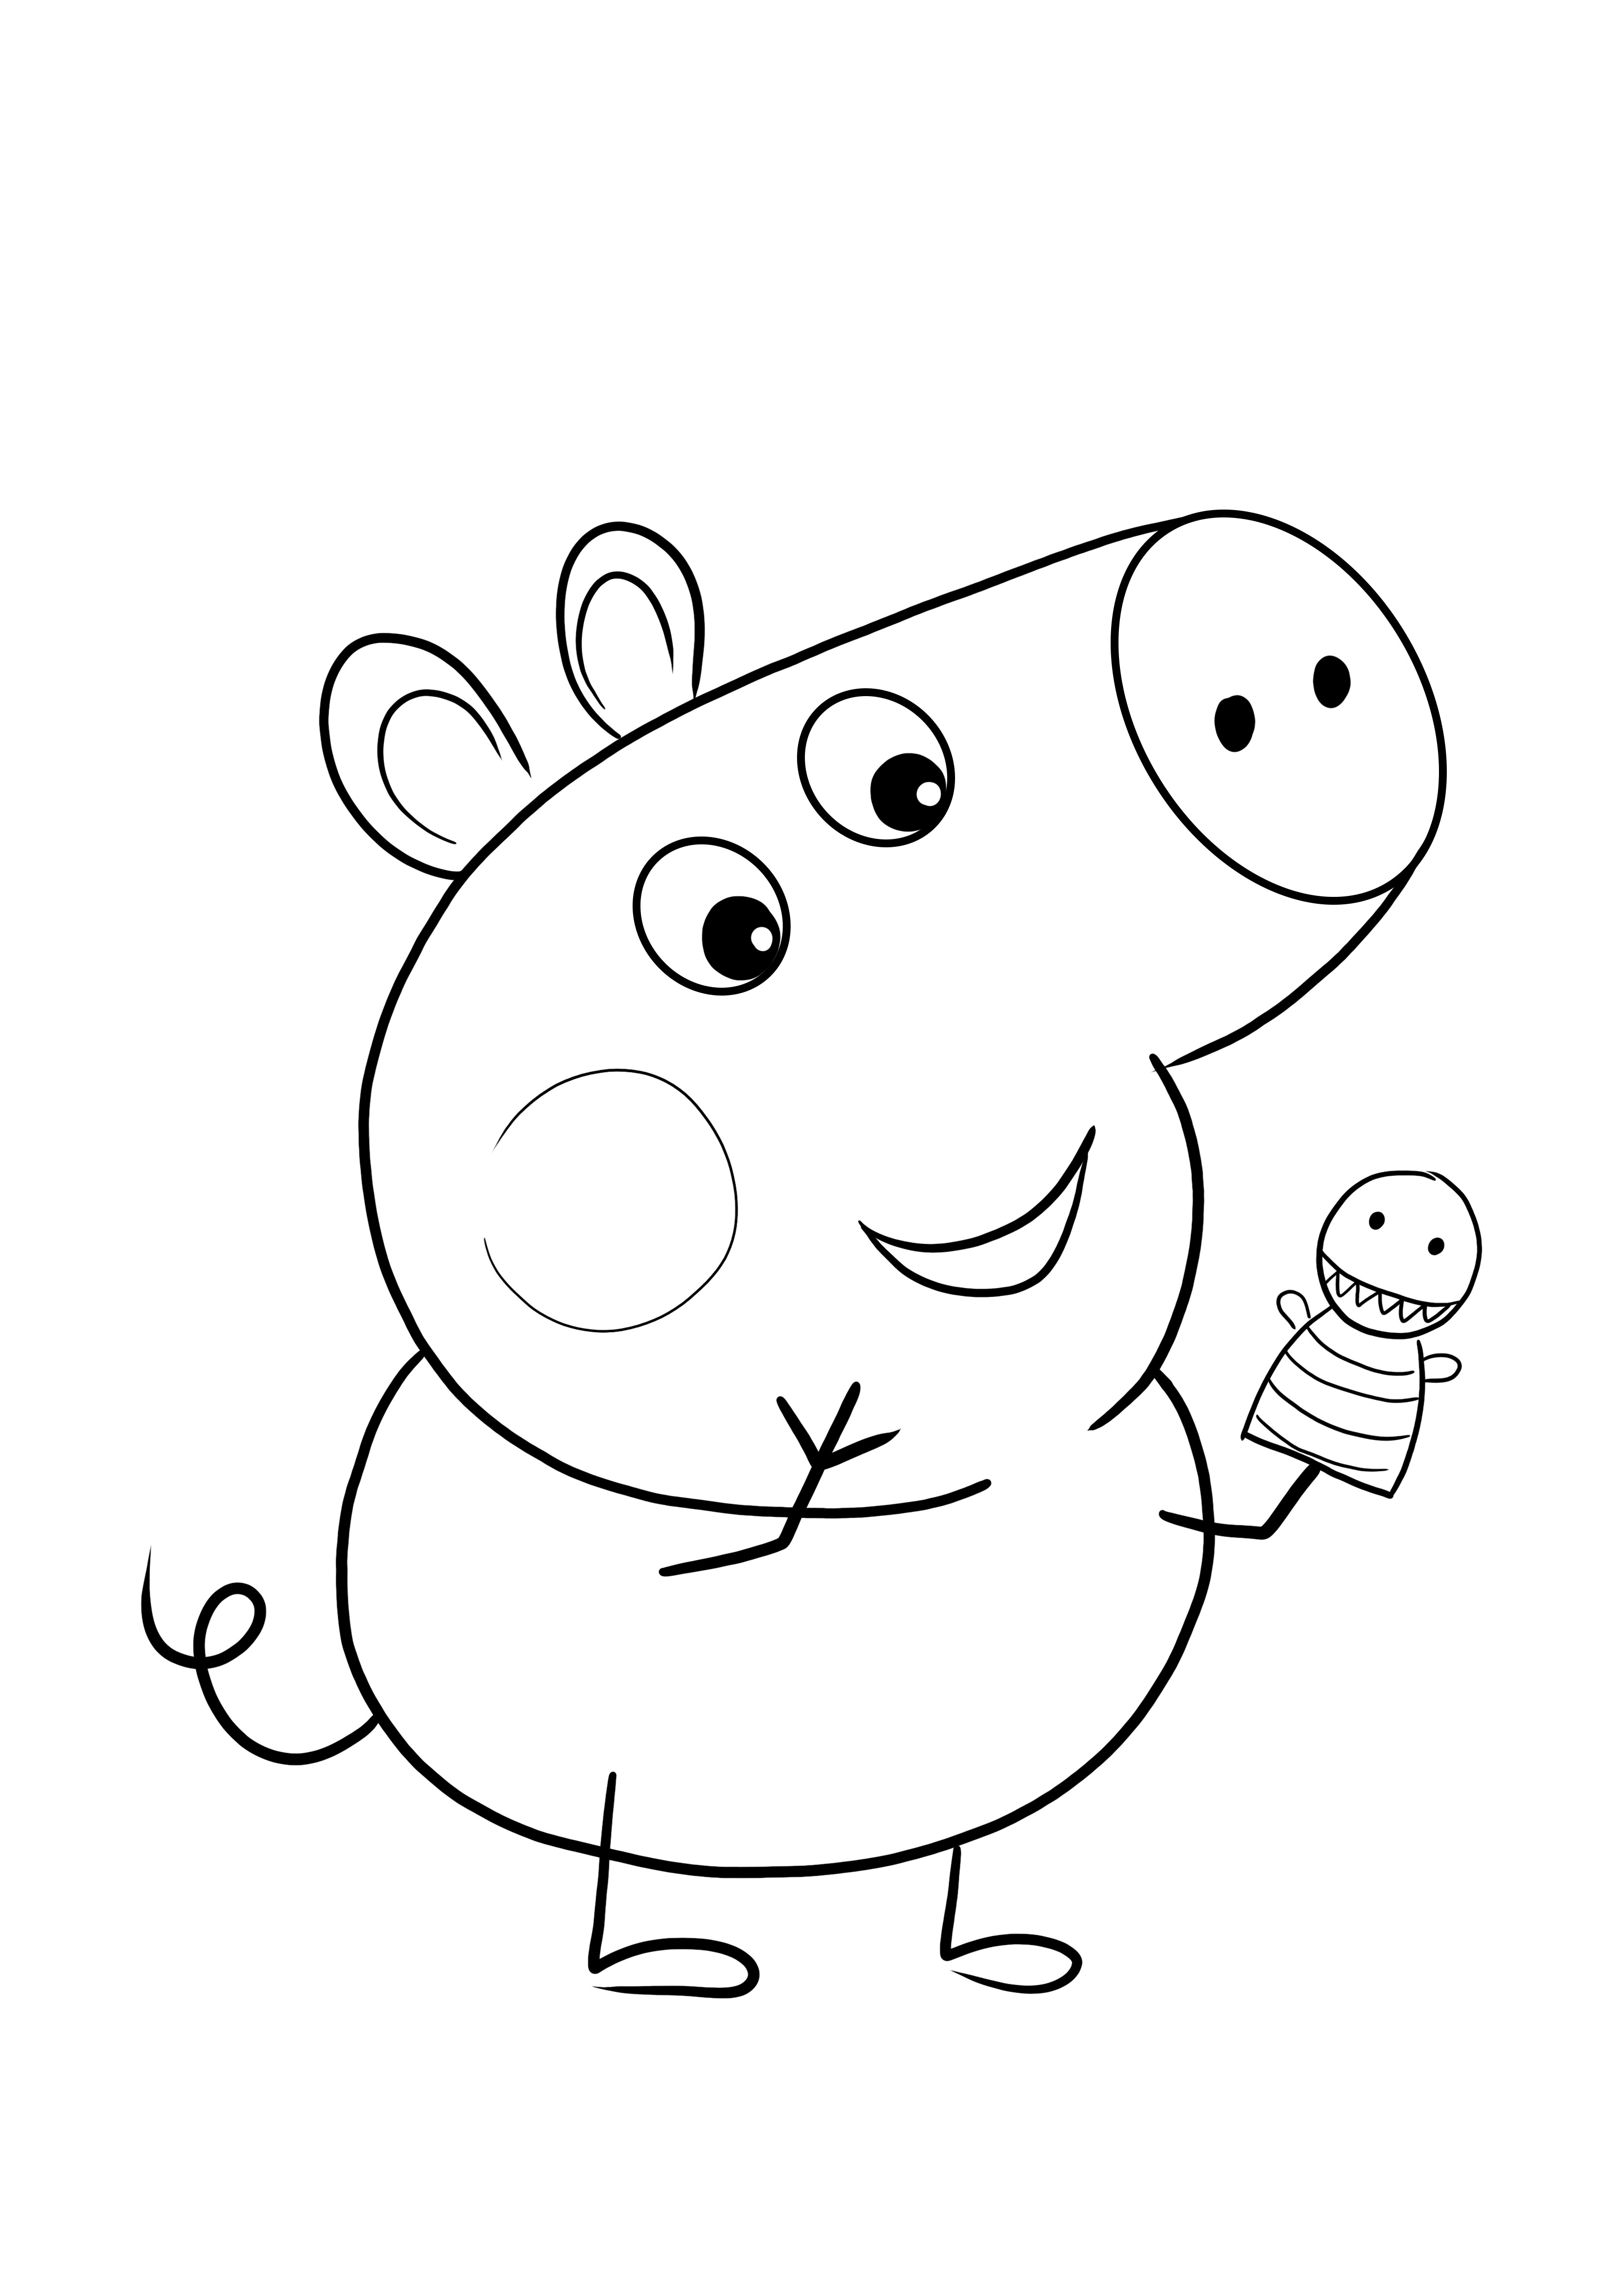 George Pig brincando com seu fantoche de dedo, mago para colorir grátis para imprimir e colorir